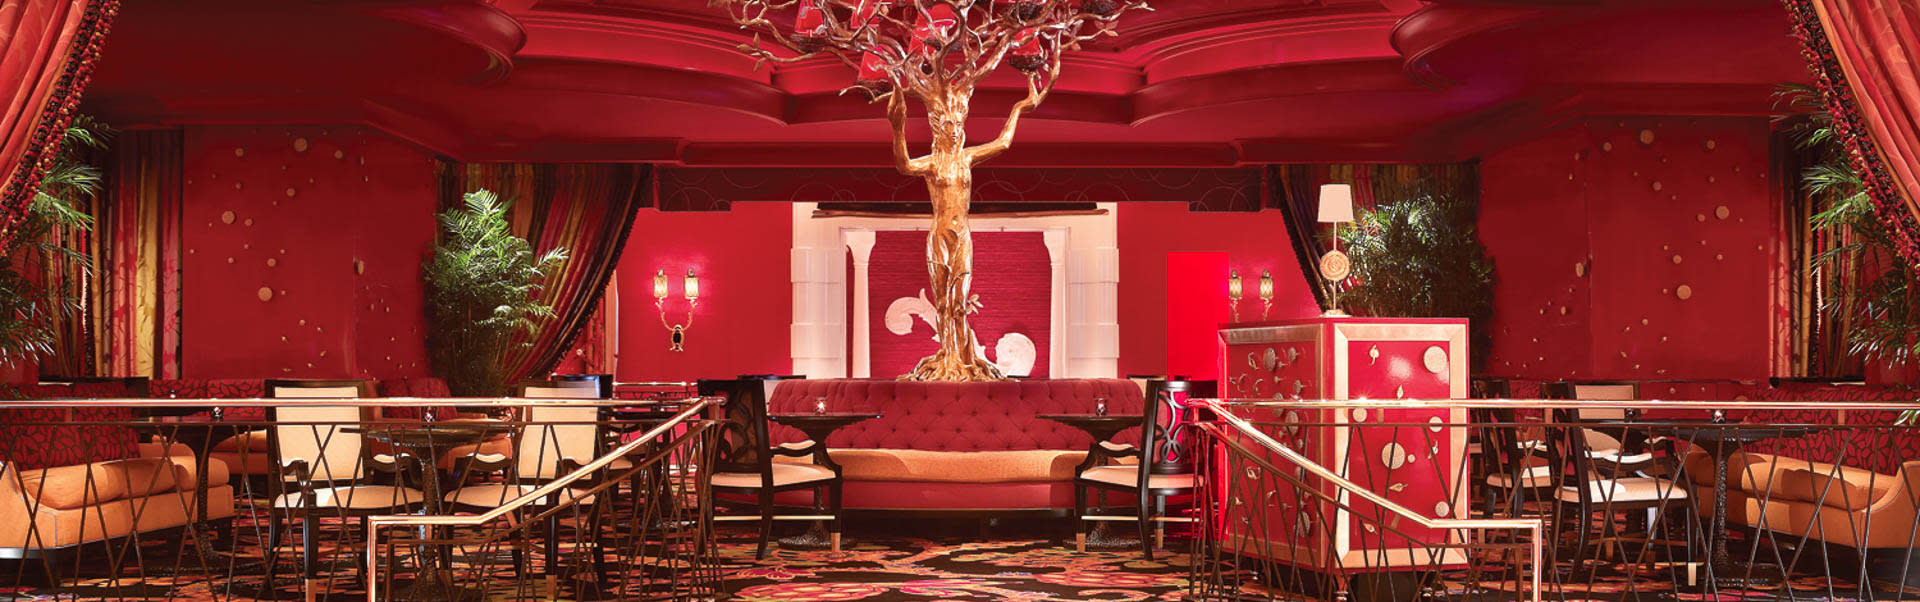 Lobby Bar Cafe | Wynn Las Vegas and Encore Resort